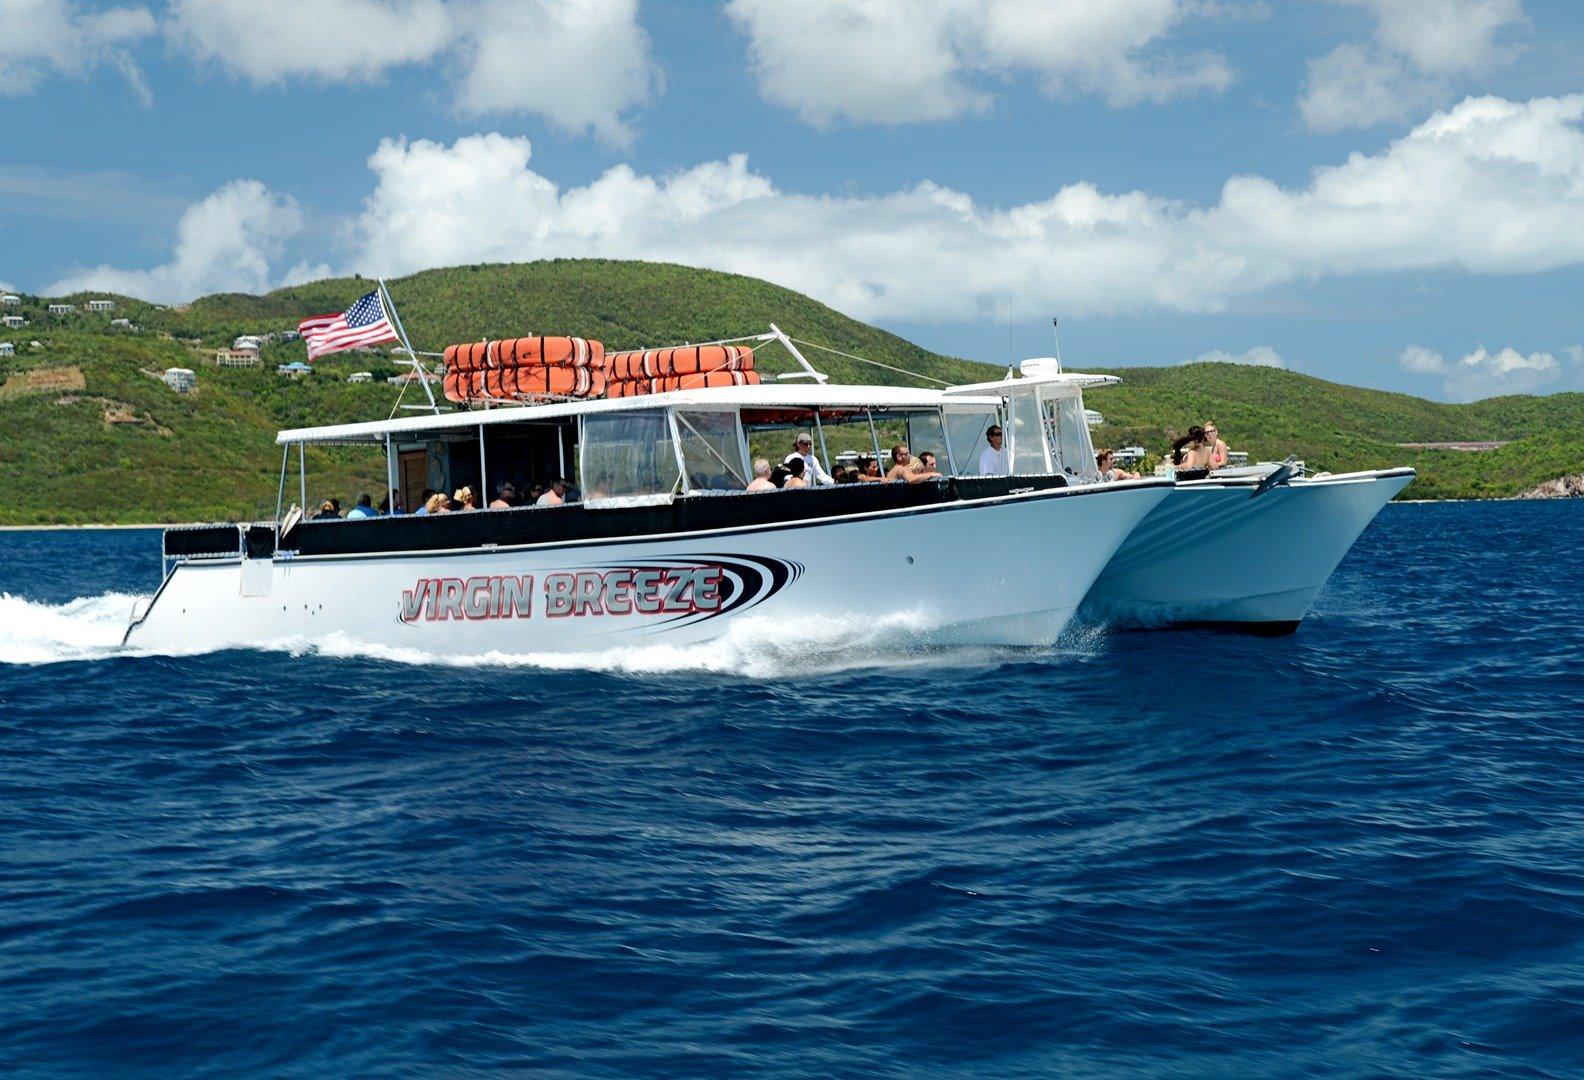 63 ft catamaran